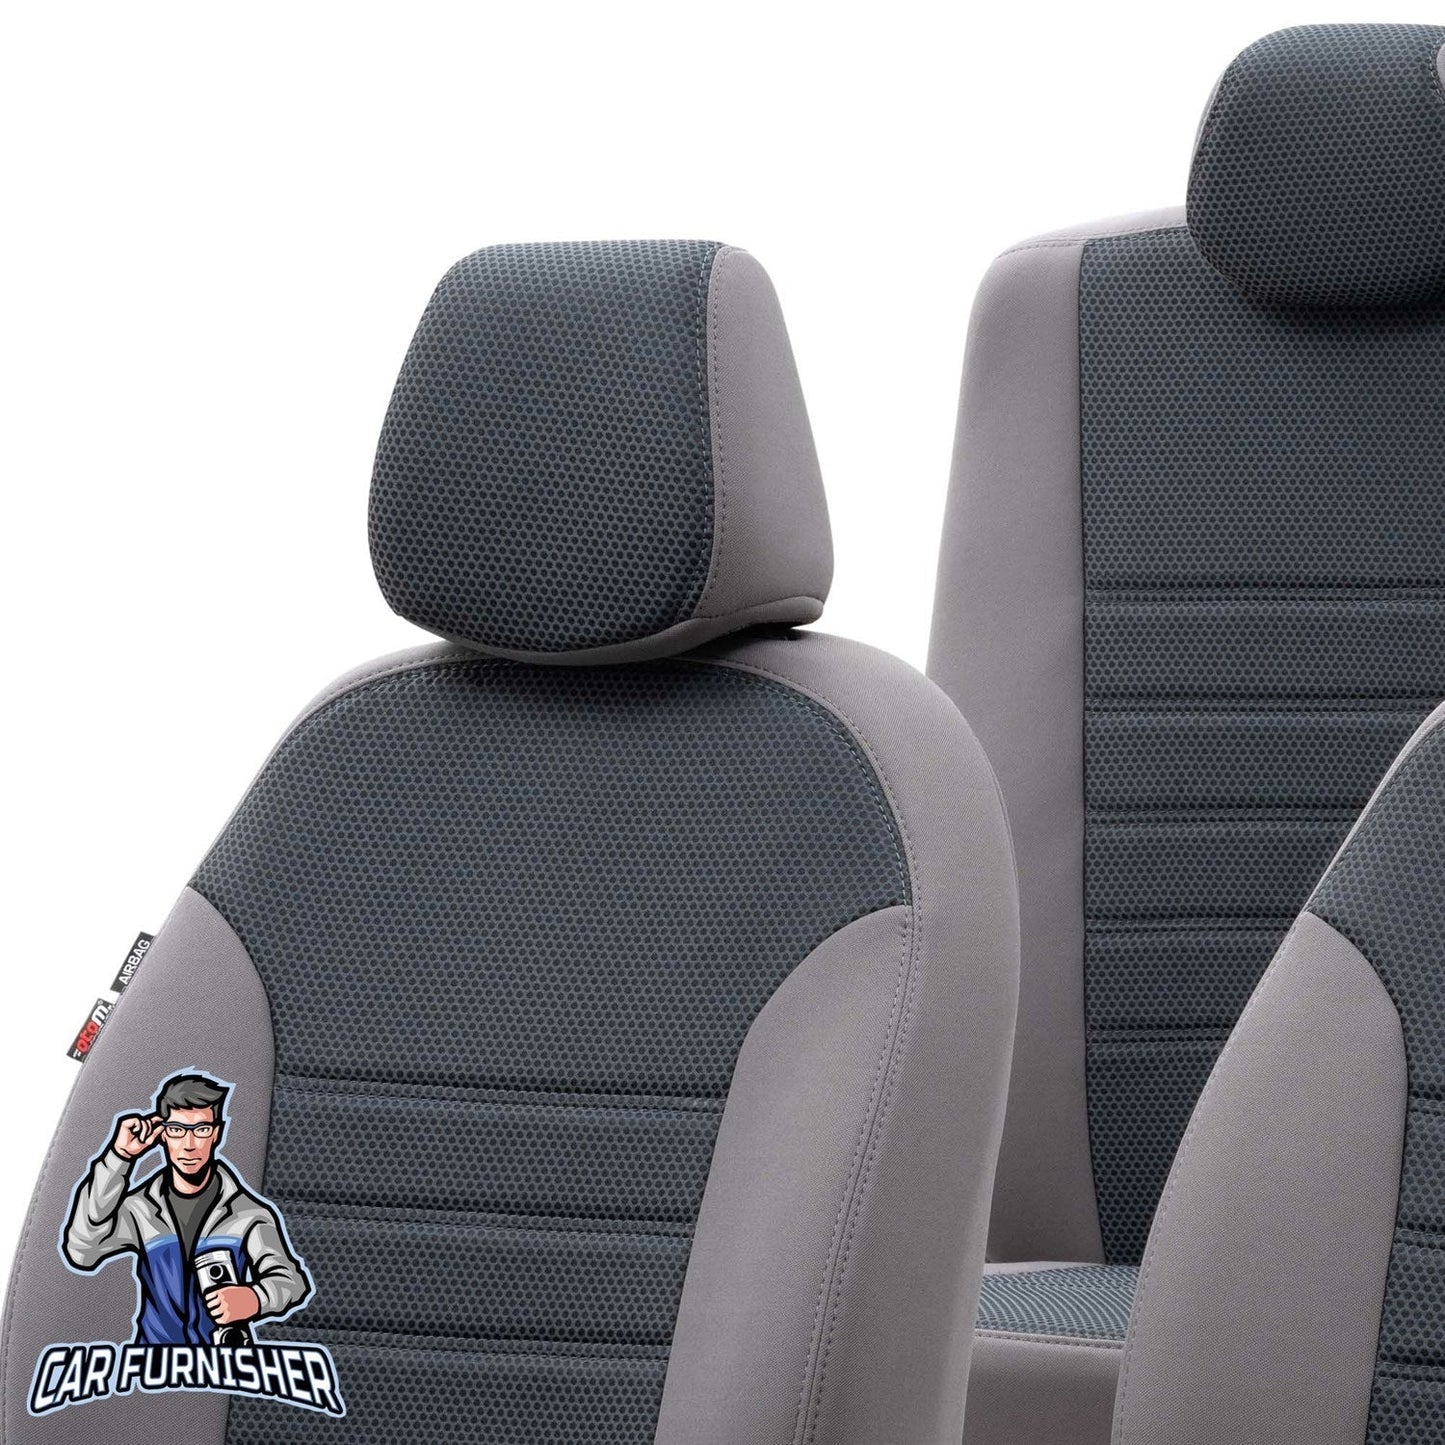 Skoda Karoq Seat Covers Original Jacquard Design Smoked Jacquard Fabric